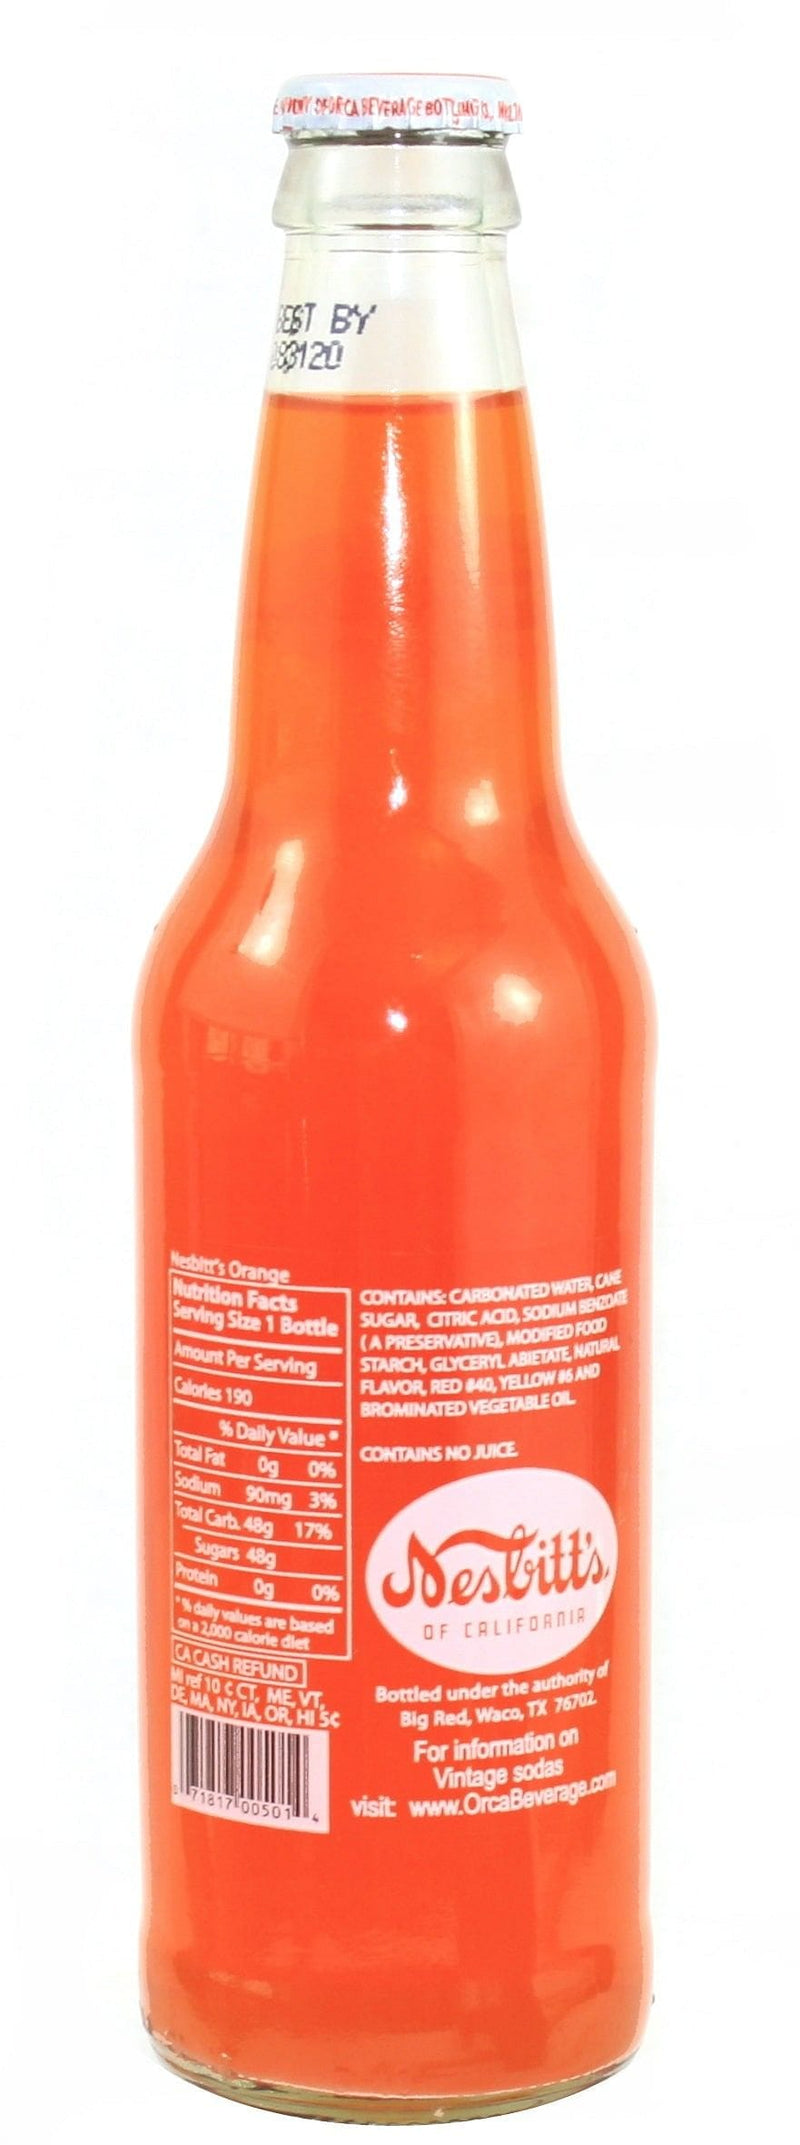 Nesbitts Glass Soda Bottle - Orange - Shelburne Country Store